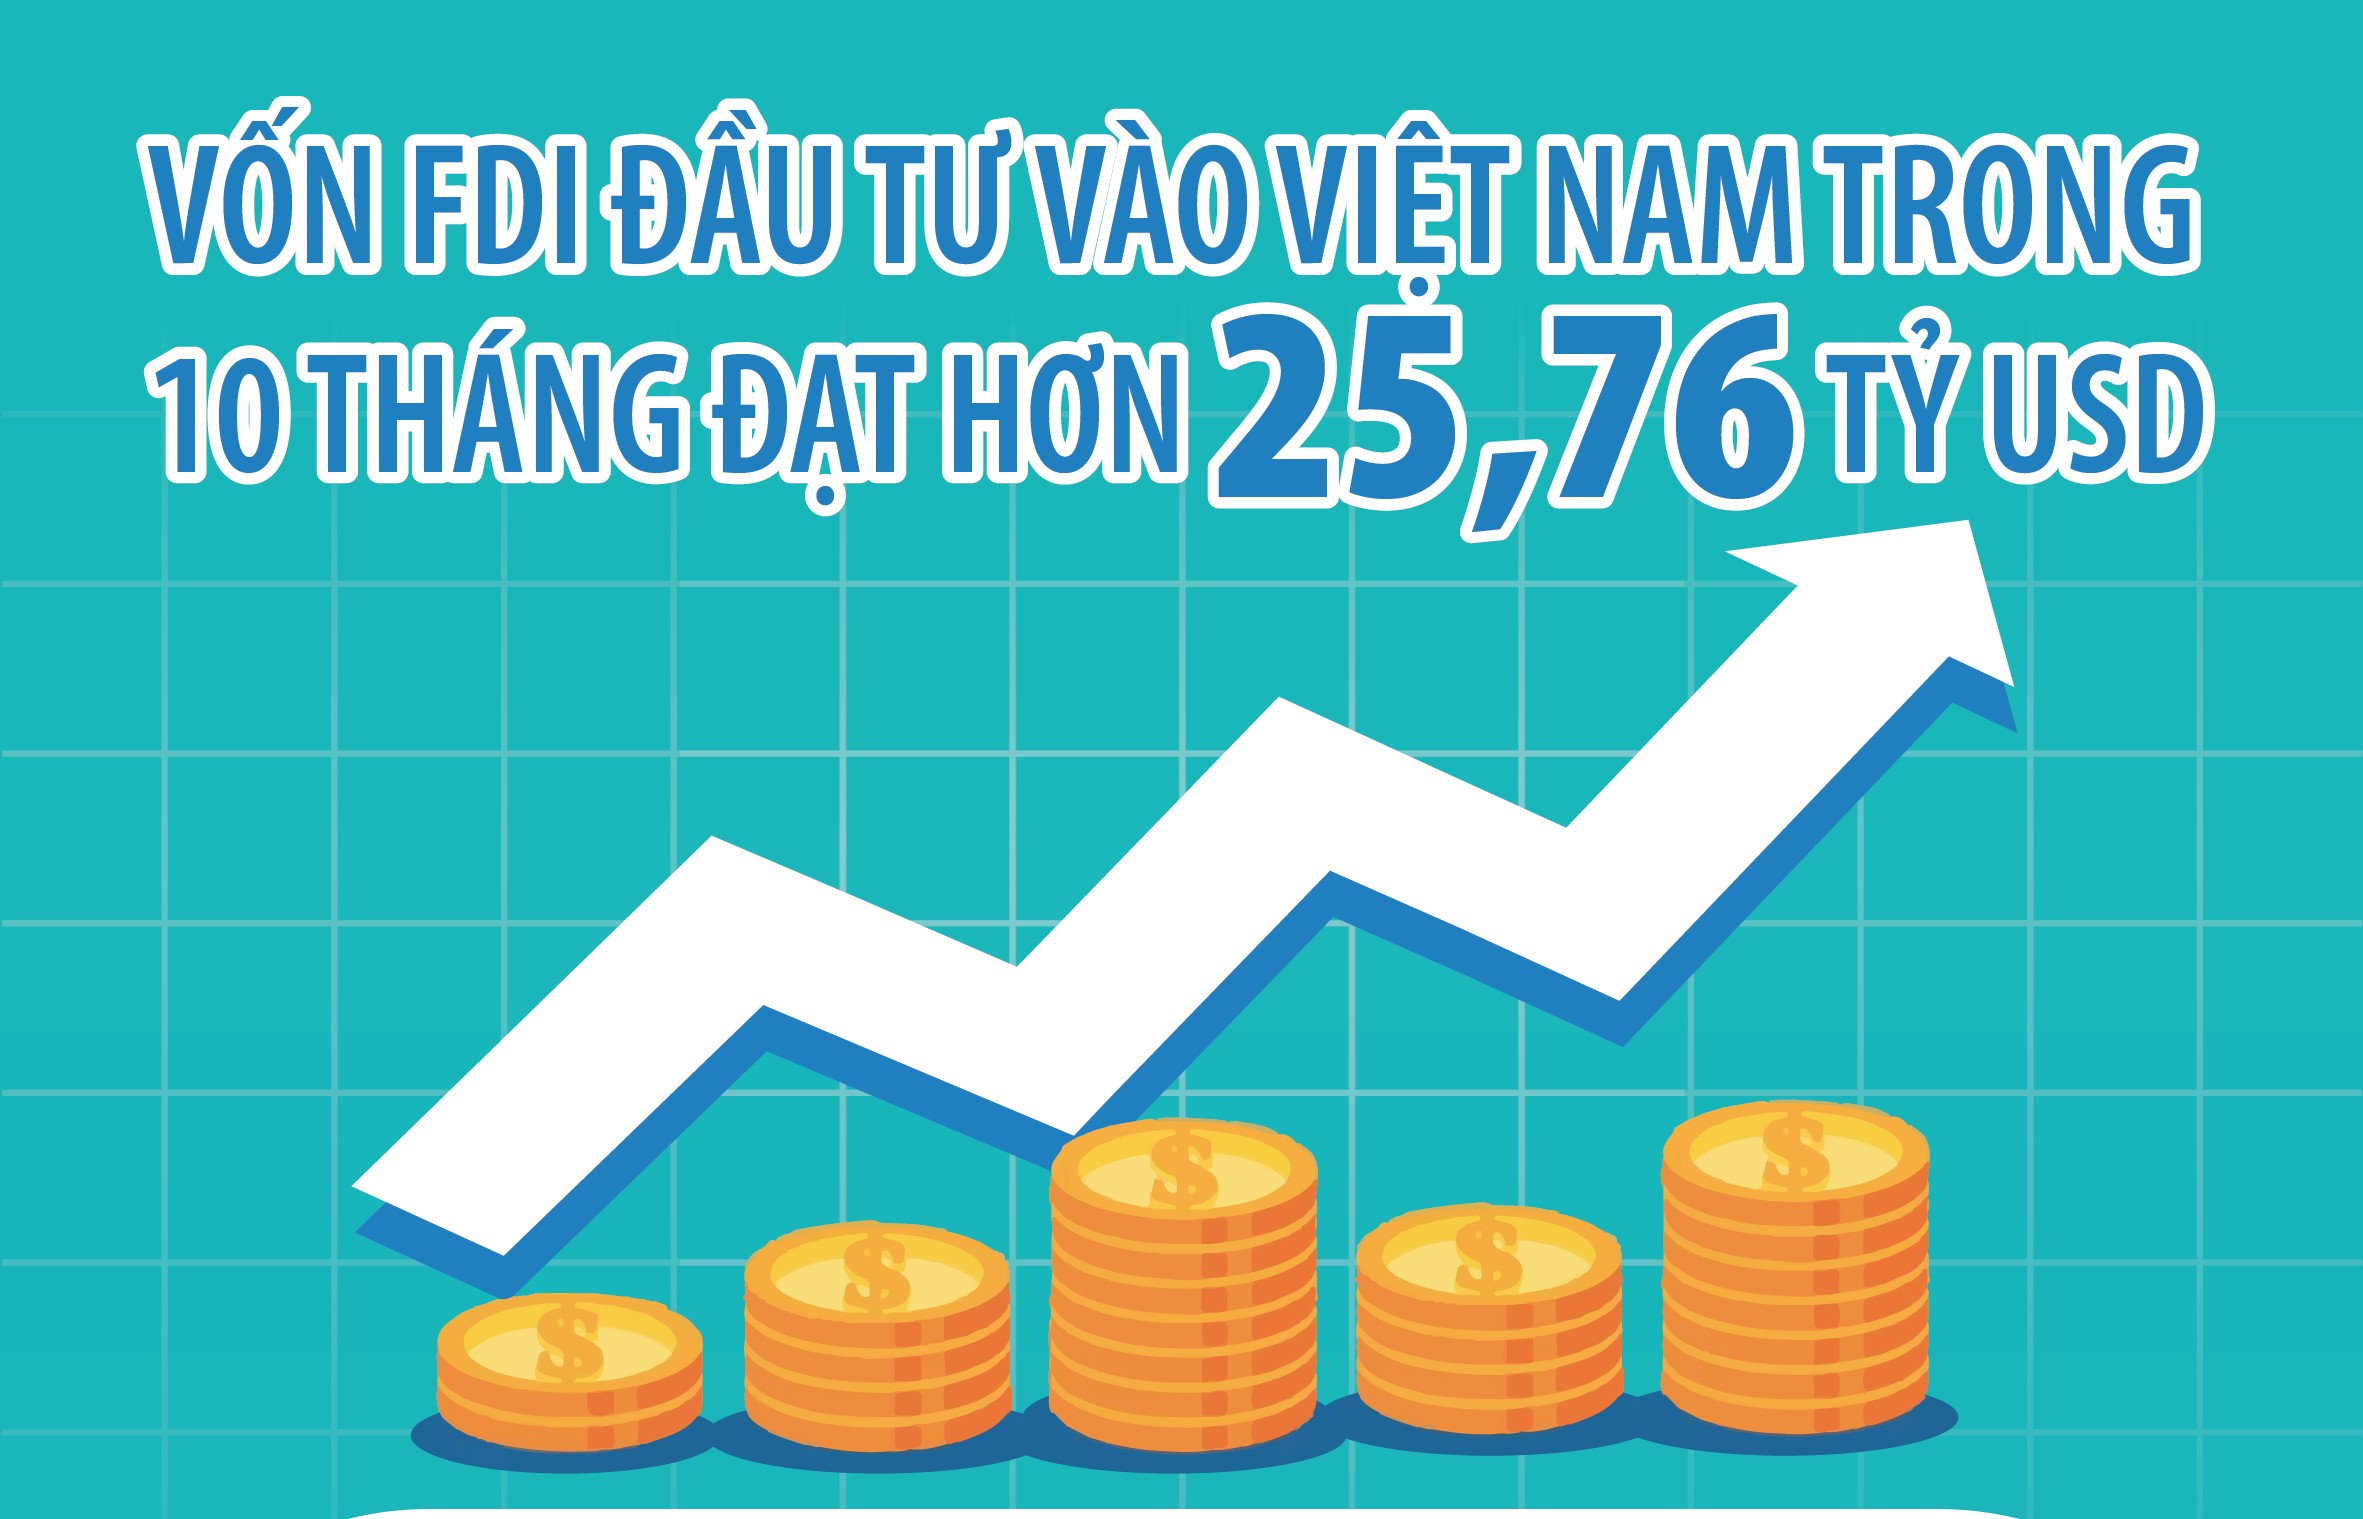 Tổng vốn FDI đăng ký vào Việt Nam trong 10 tháng đạt hơn 25,76 tỷ USD